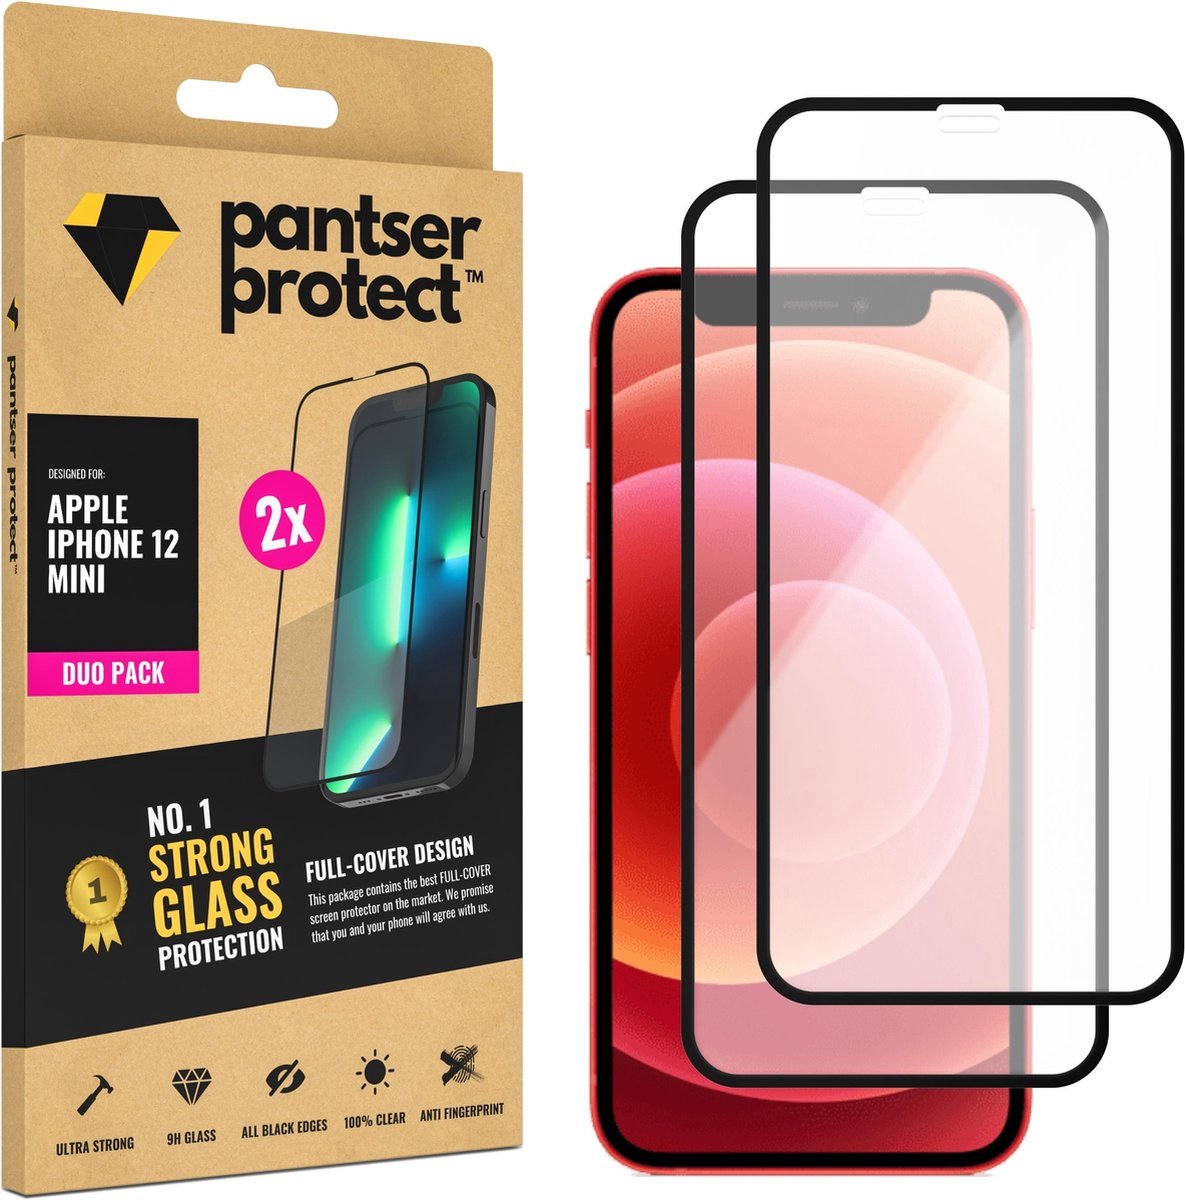 DUO-PACK - 2x Pantser Protect™ Glass Screenprotector Geschikt voor iPhone 12 Mini - Case Friendly - Premium Pantserglas - Glazen Screen Protector